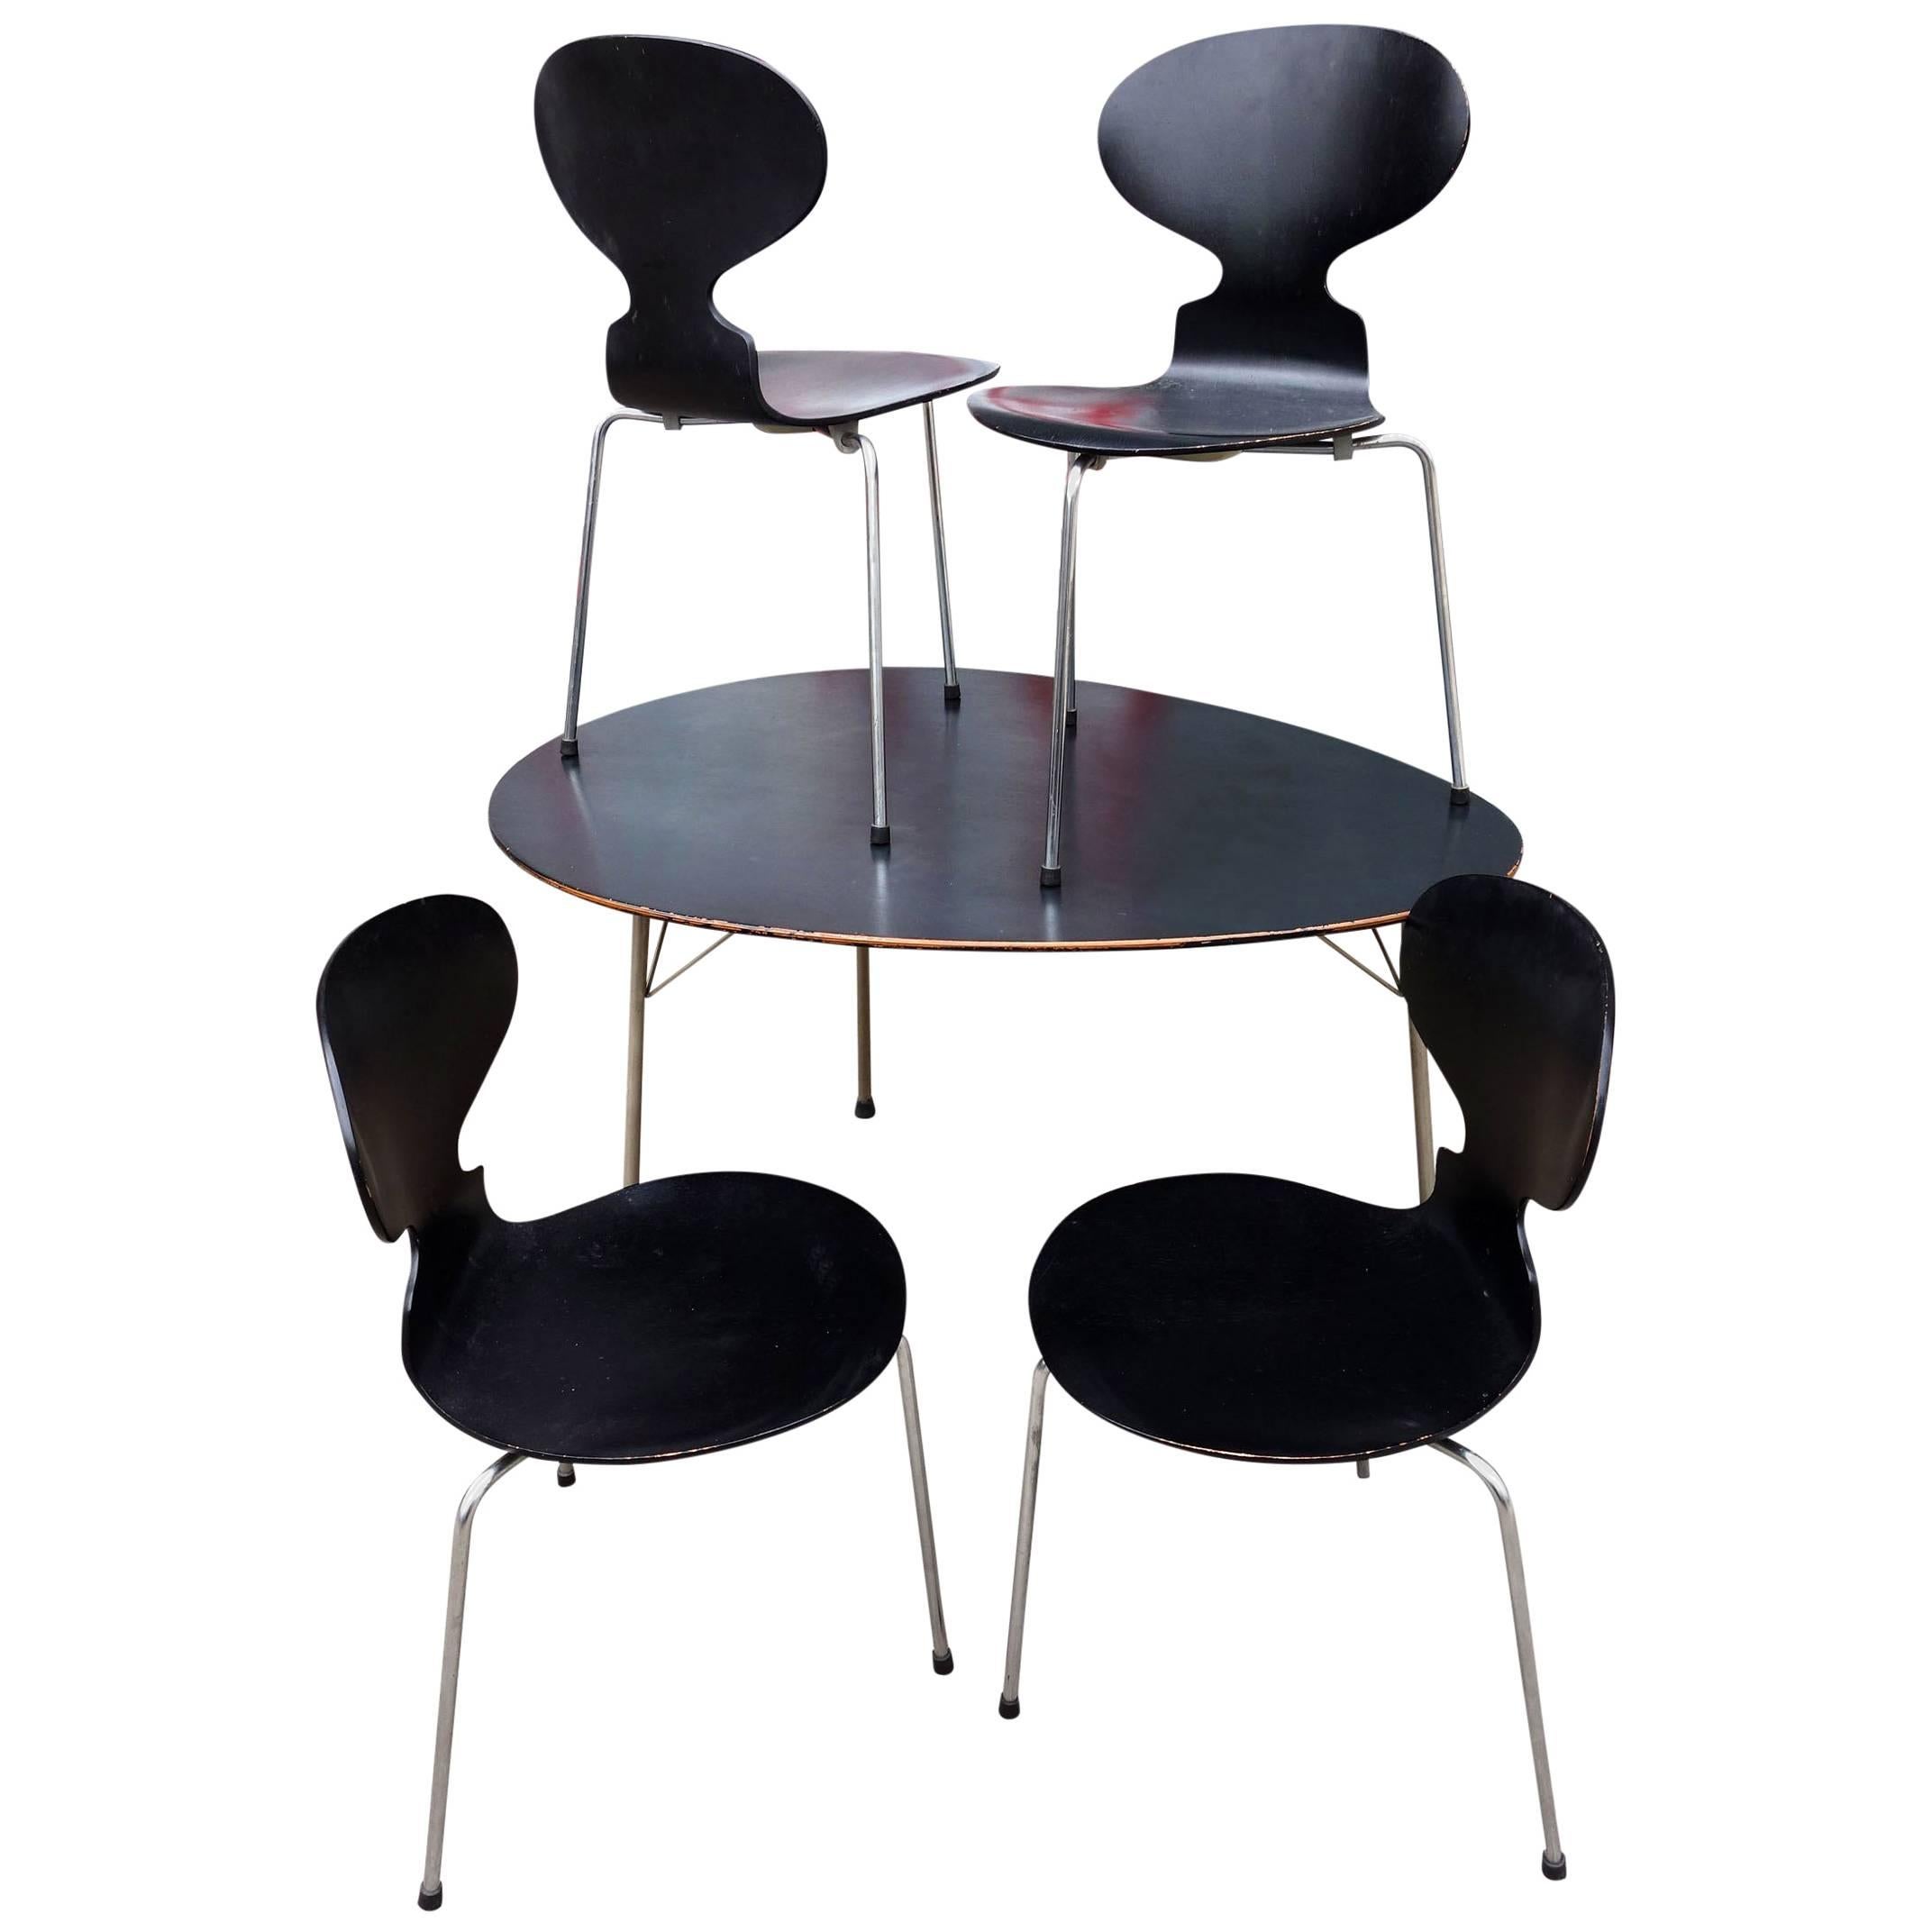 Arne Jacobsen fauteuil à queue de cerf